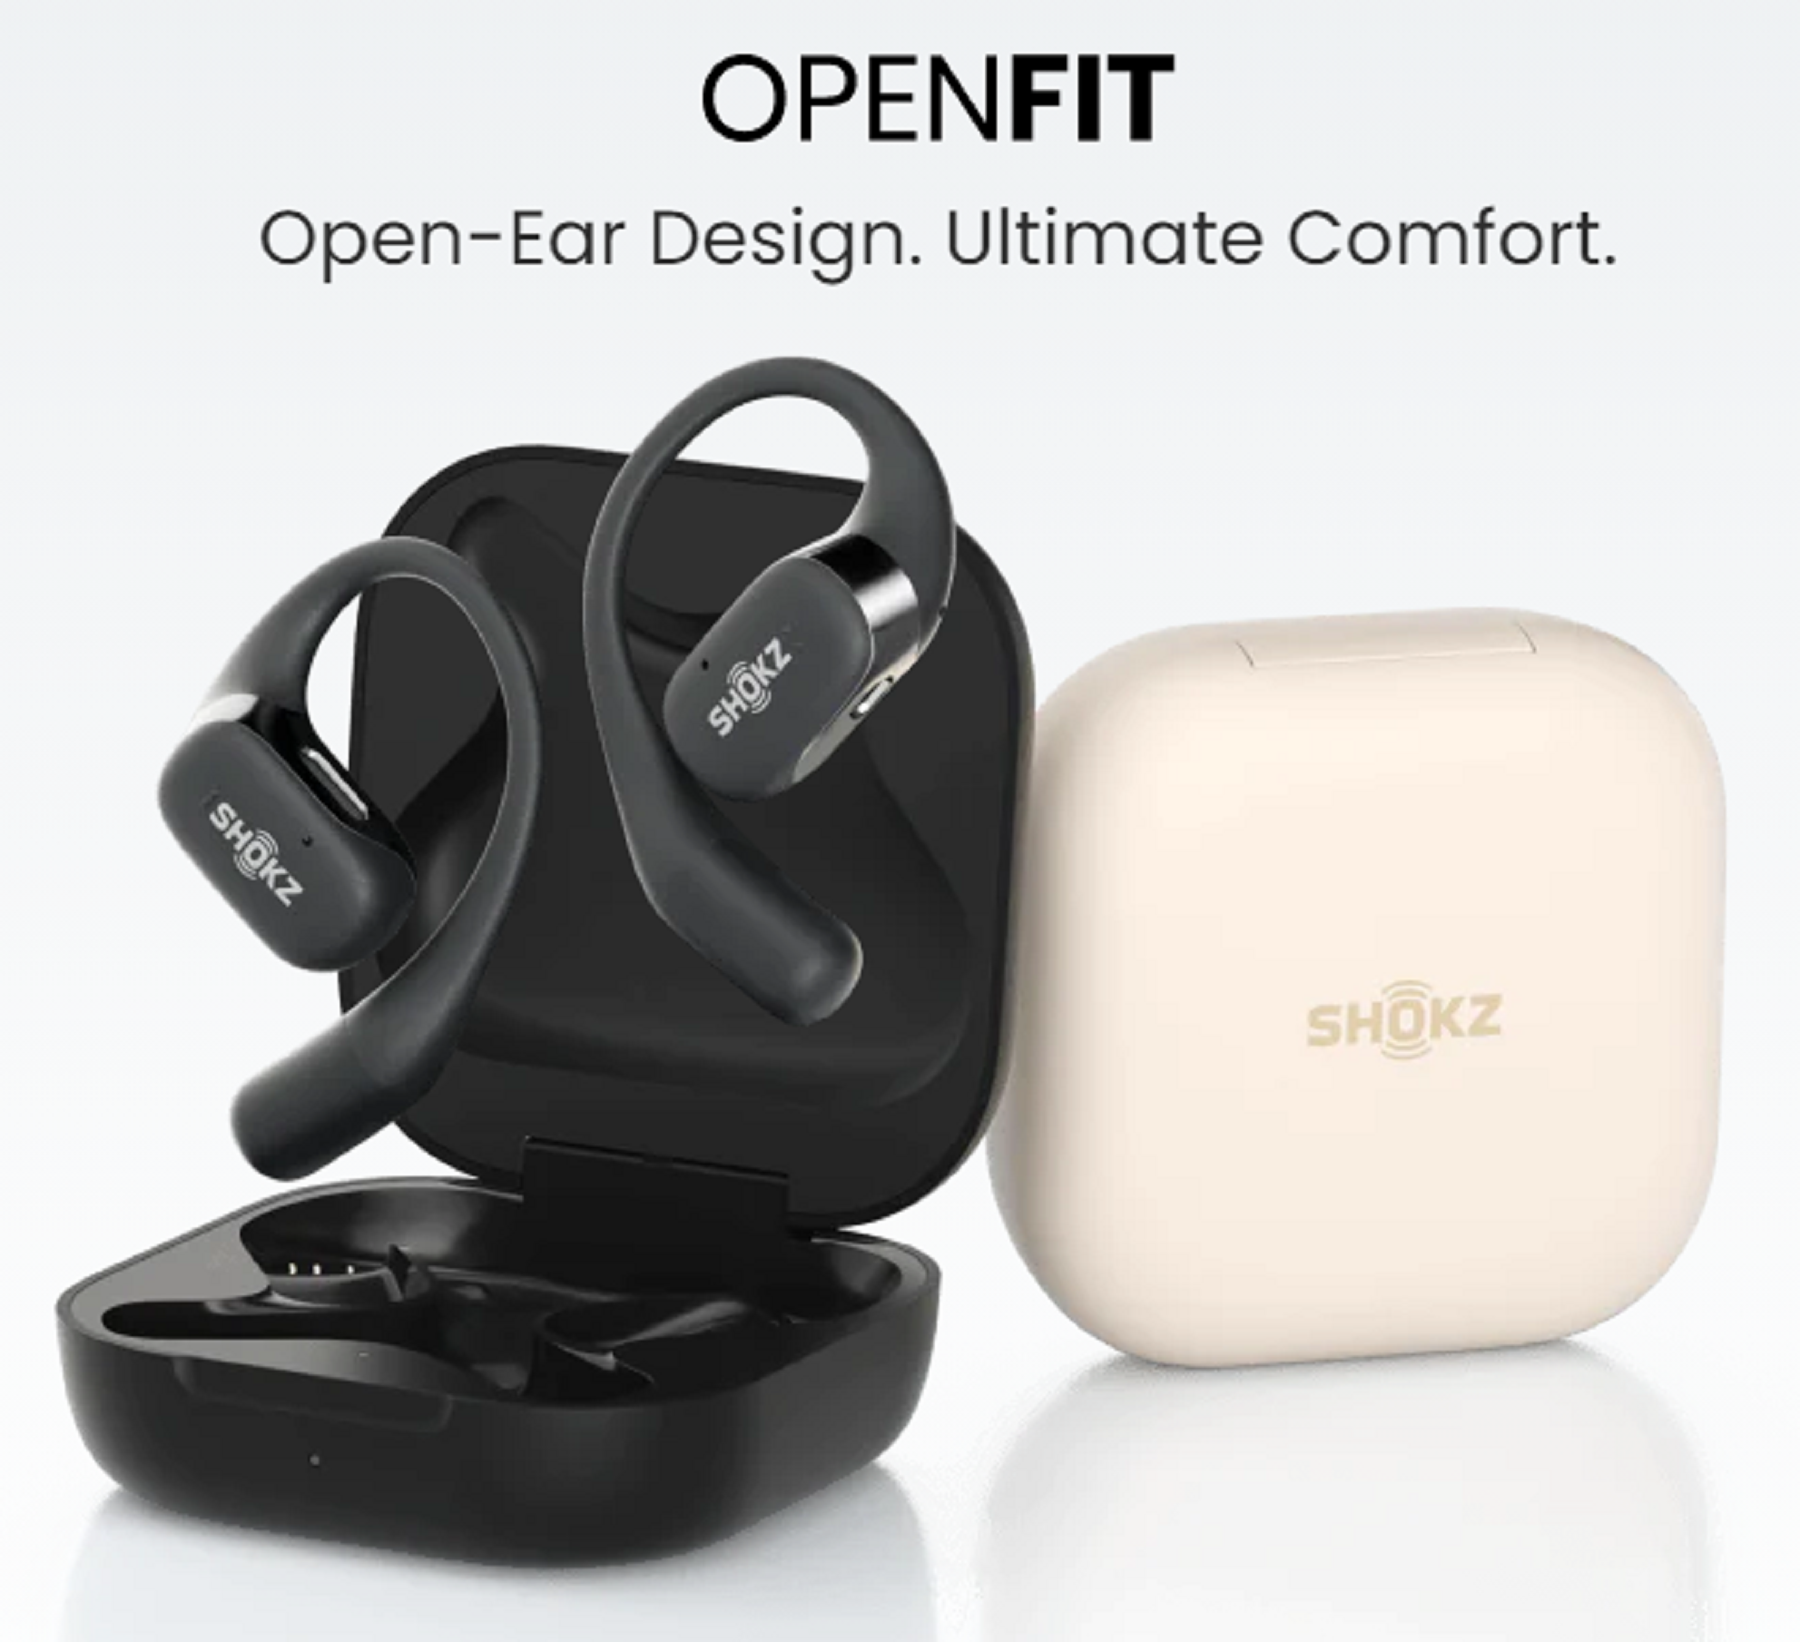 Shokz Wraps Ears in Comfort with OpenFit Open-Ear True Wireless Earbuds